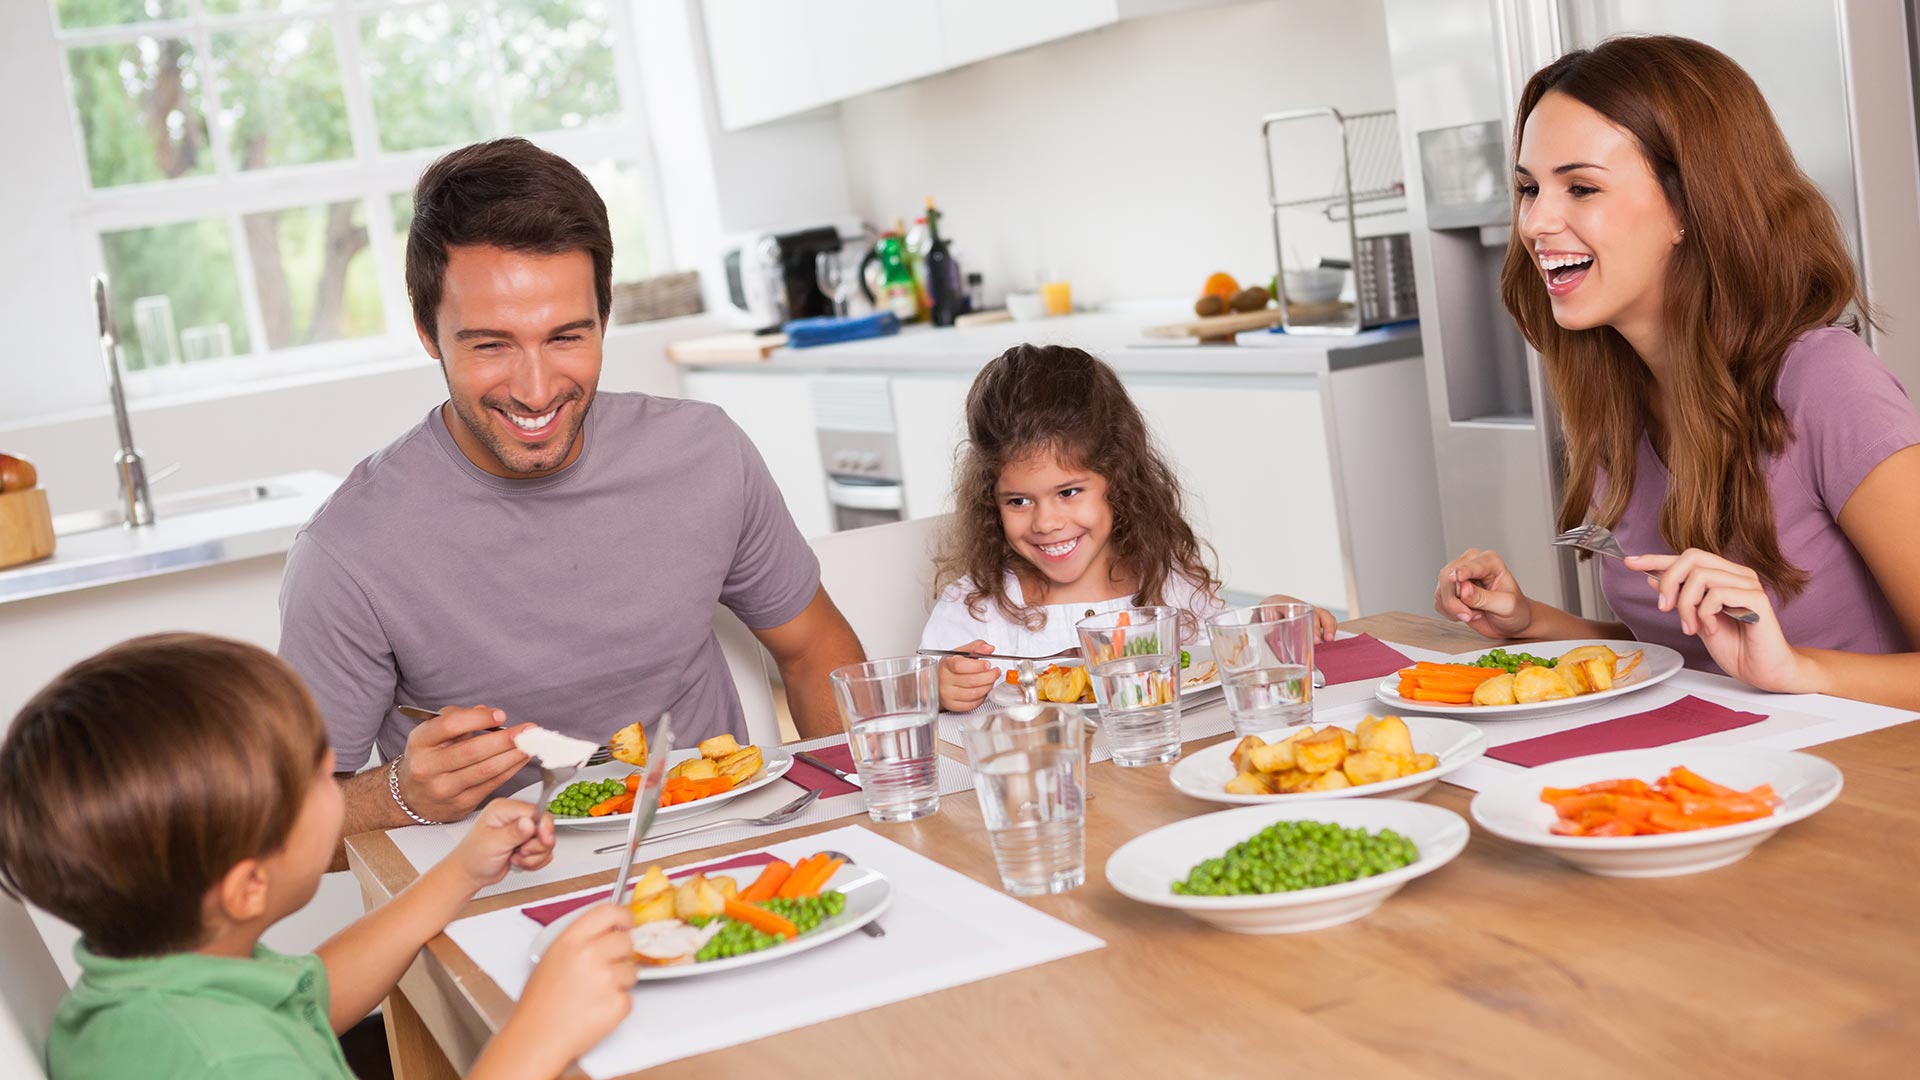 Recuperar la alimentación casera en casa es una cosa positiva del confinamiento por COVID-19 (Shutterstock)